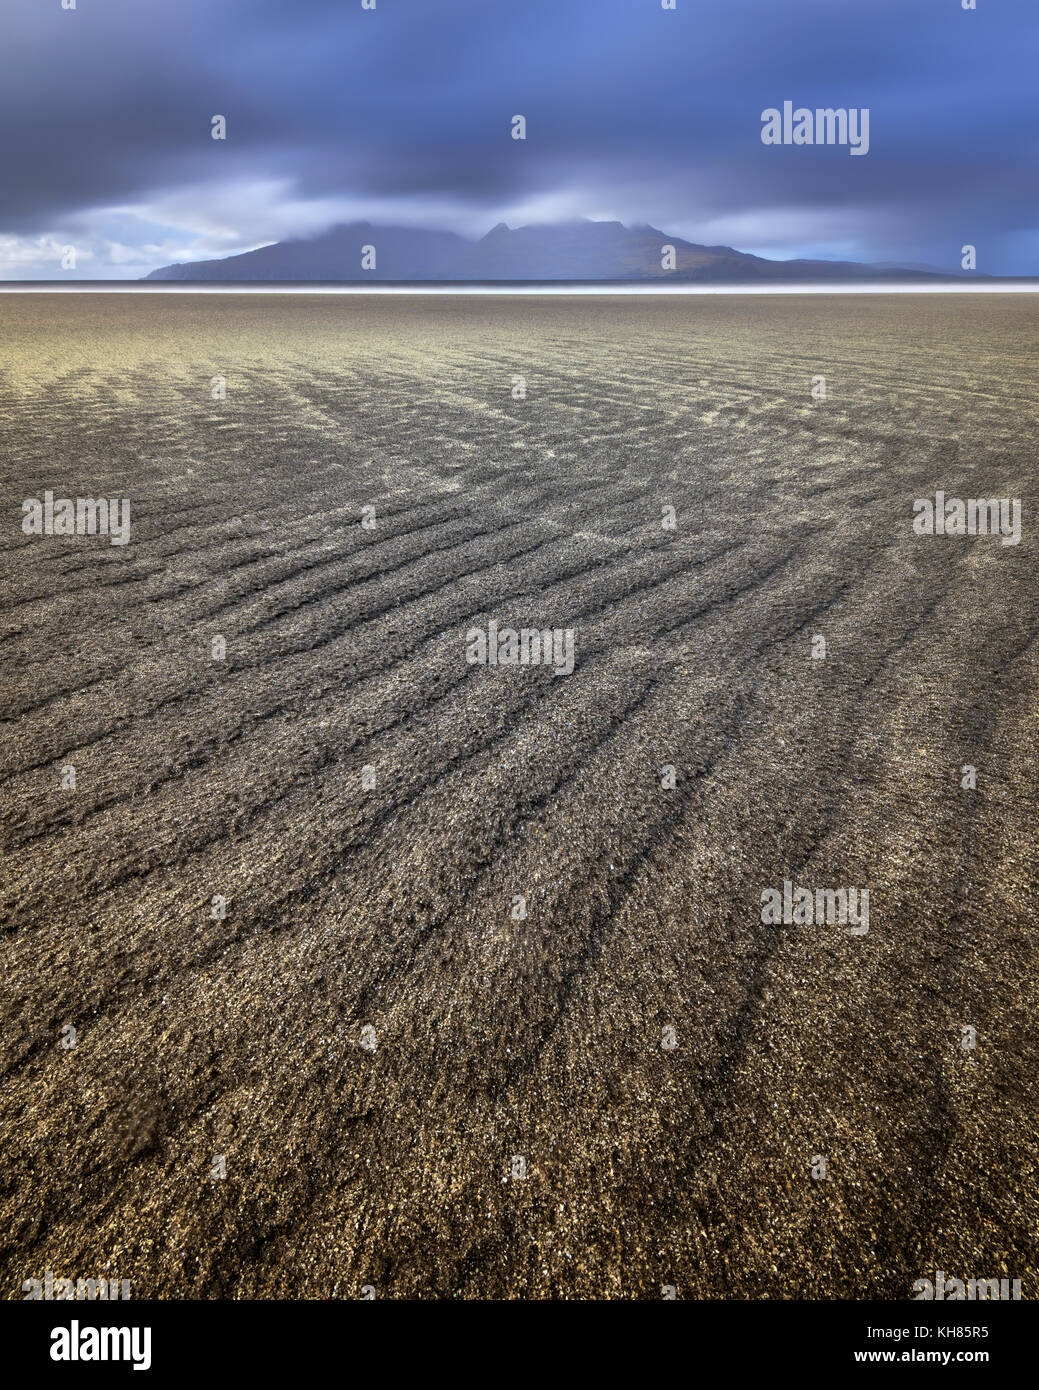 Plage de sable fin, l'île de Eigg, Ecosse, Royaume-Uni Banque D'Images